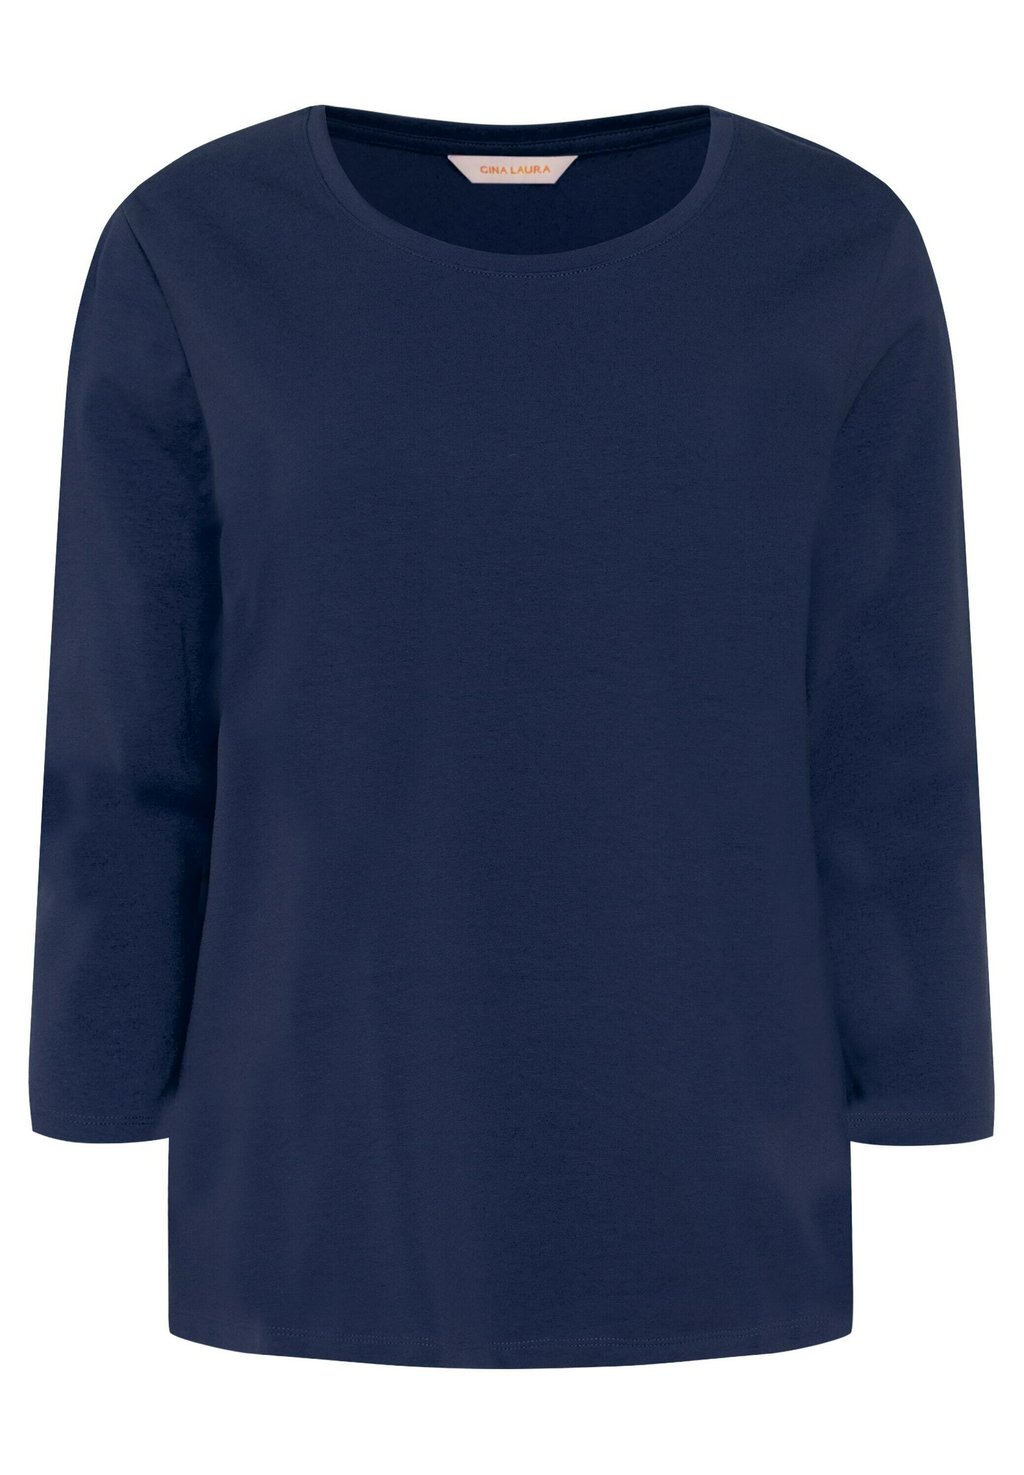 Рубашка с длинным рукавом GINA LAURA, цвет navy blau Laura